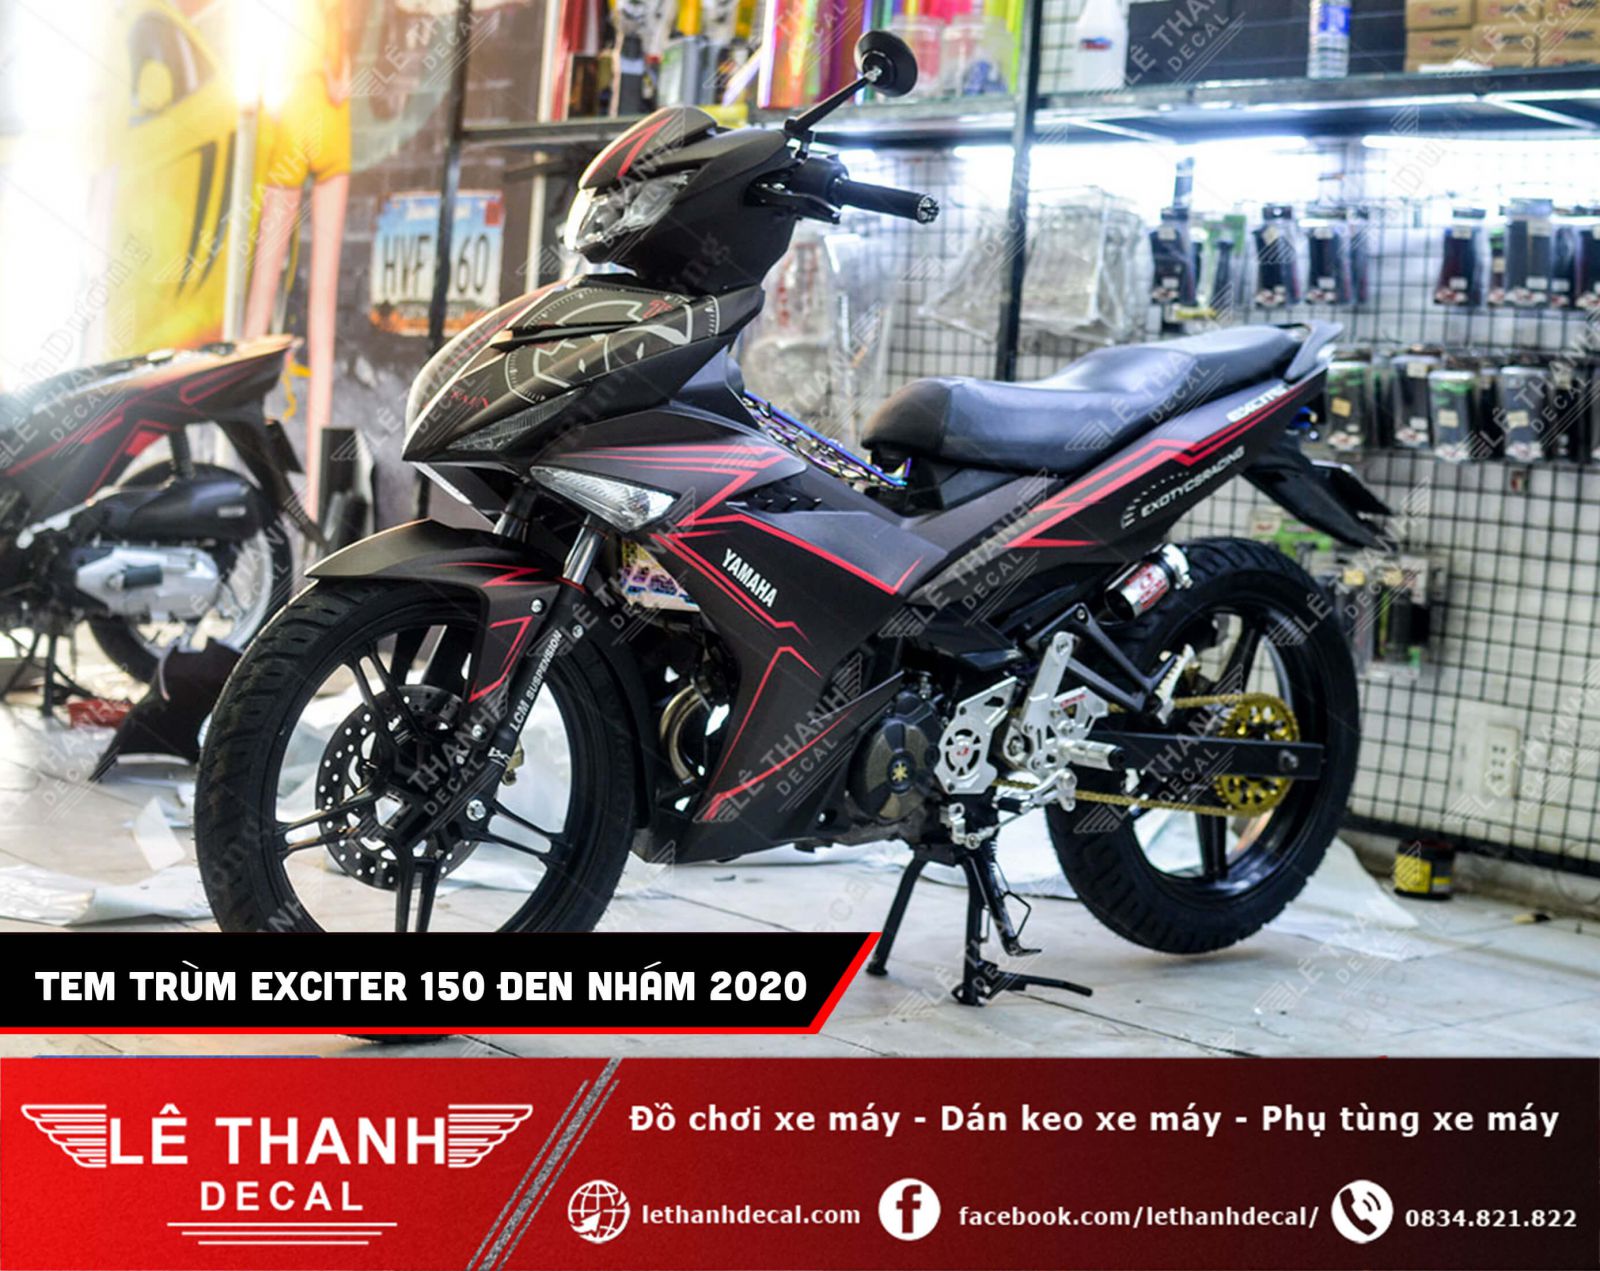 Exciter 150 2020 đen nhám  Soi cận cảnh giá bán và thủ tục trả góp Yamaha  Exciter màu đen nhám  YouTube